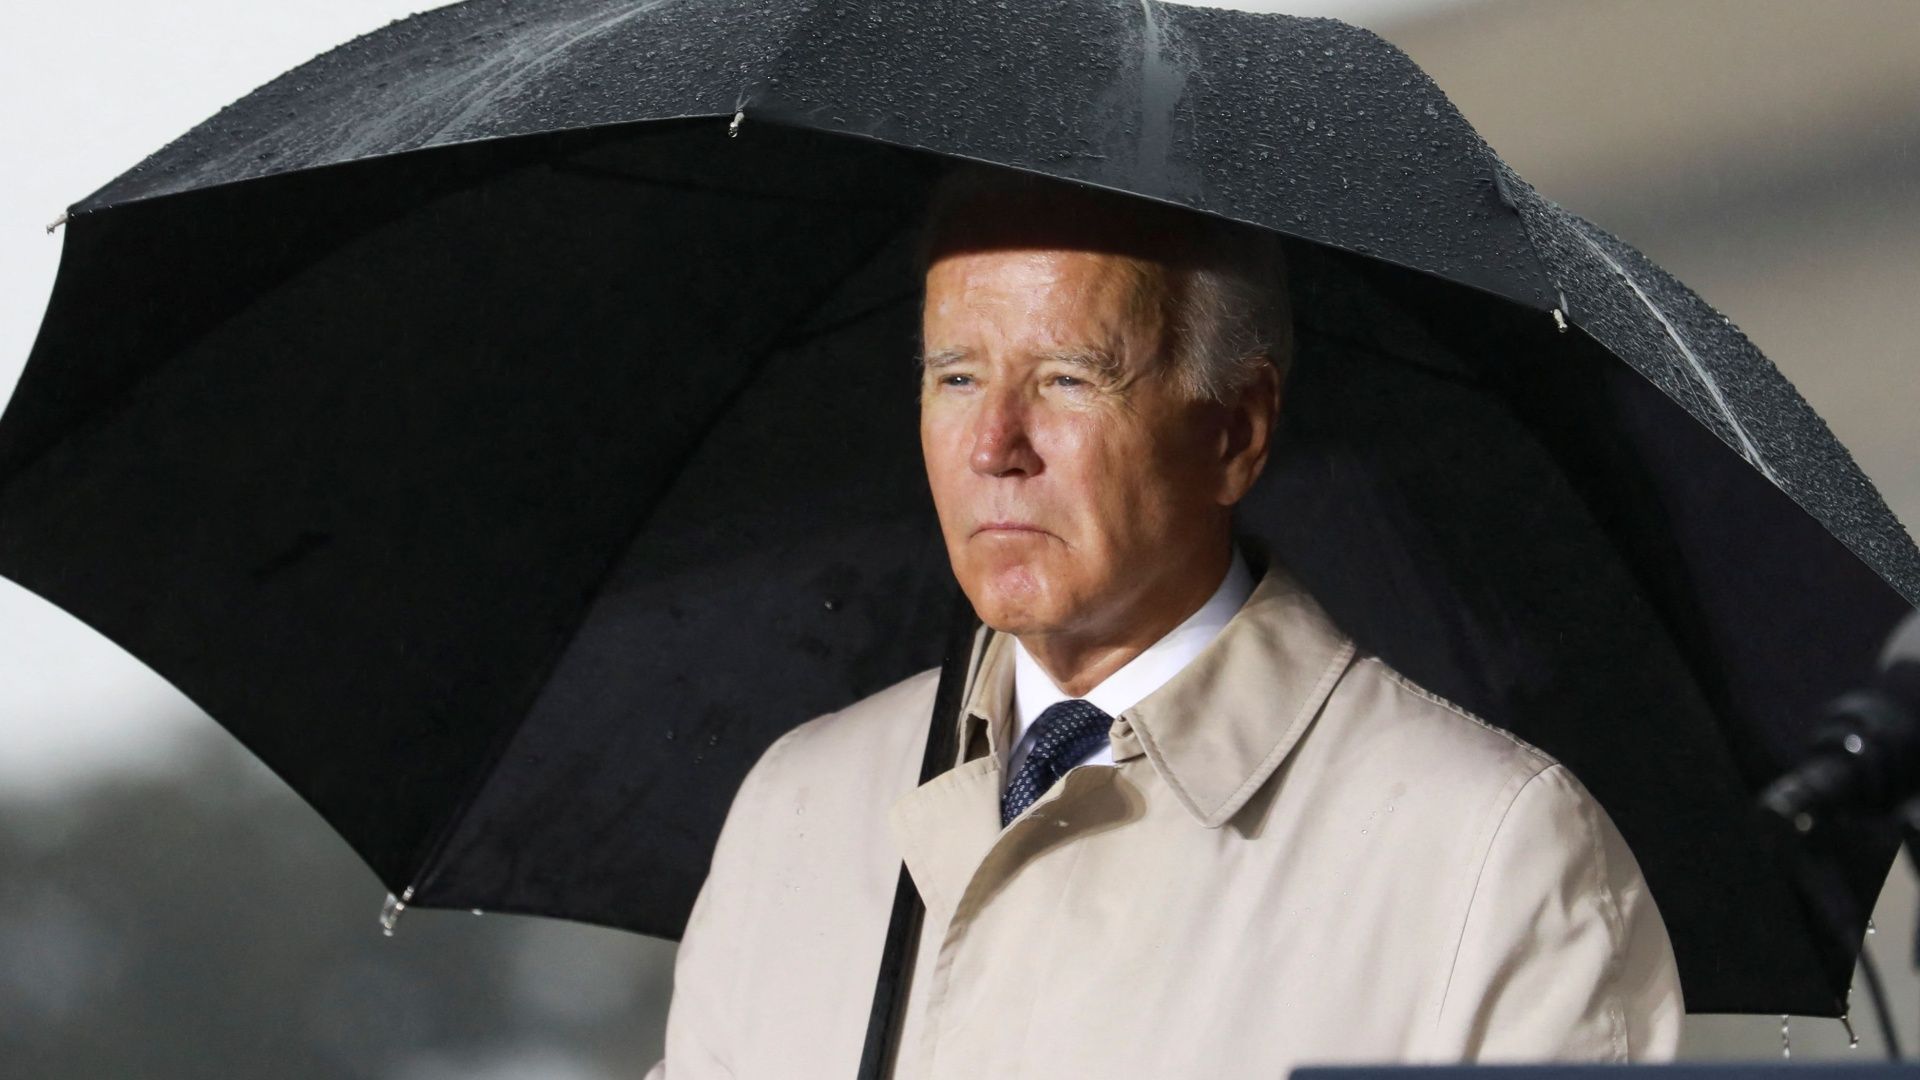 Joe_Biden_NewYork_foto_Reuters.jpg